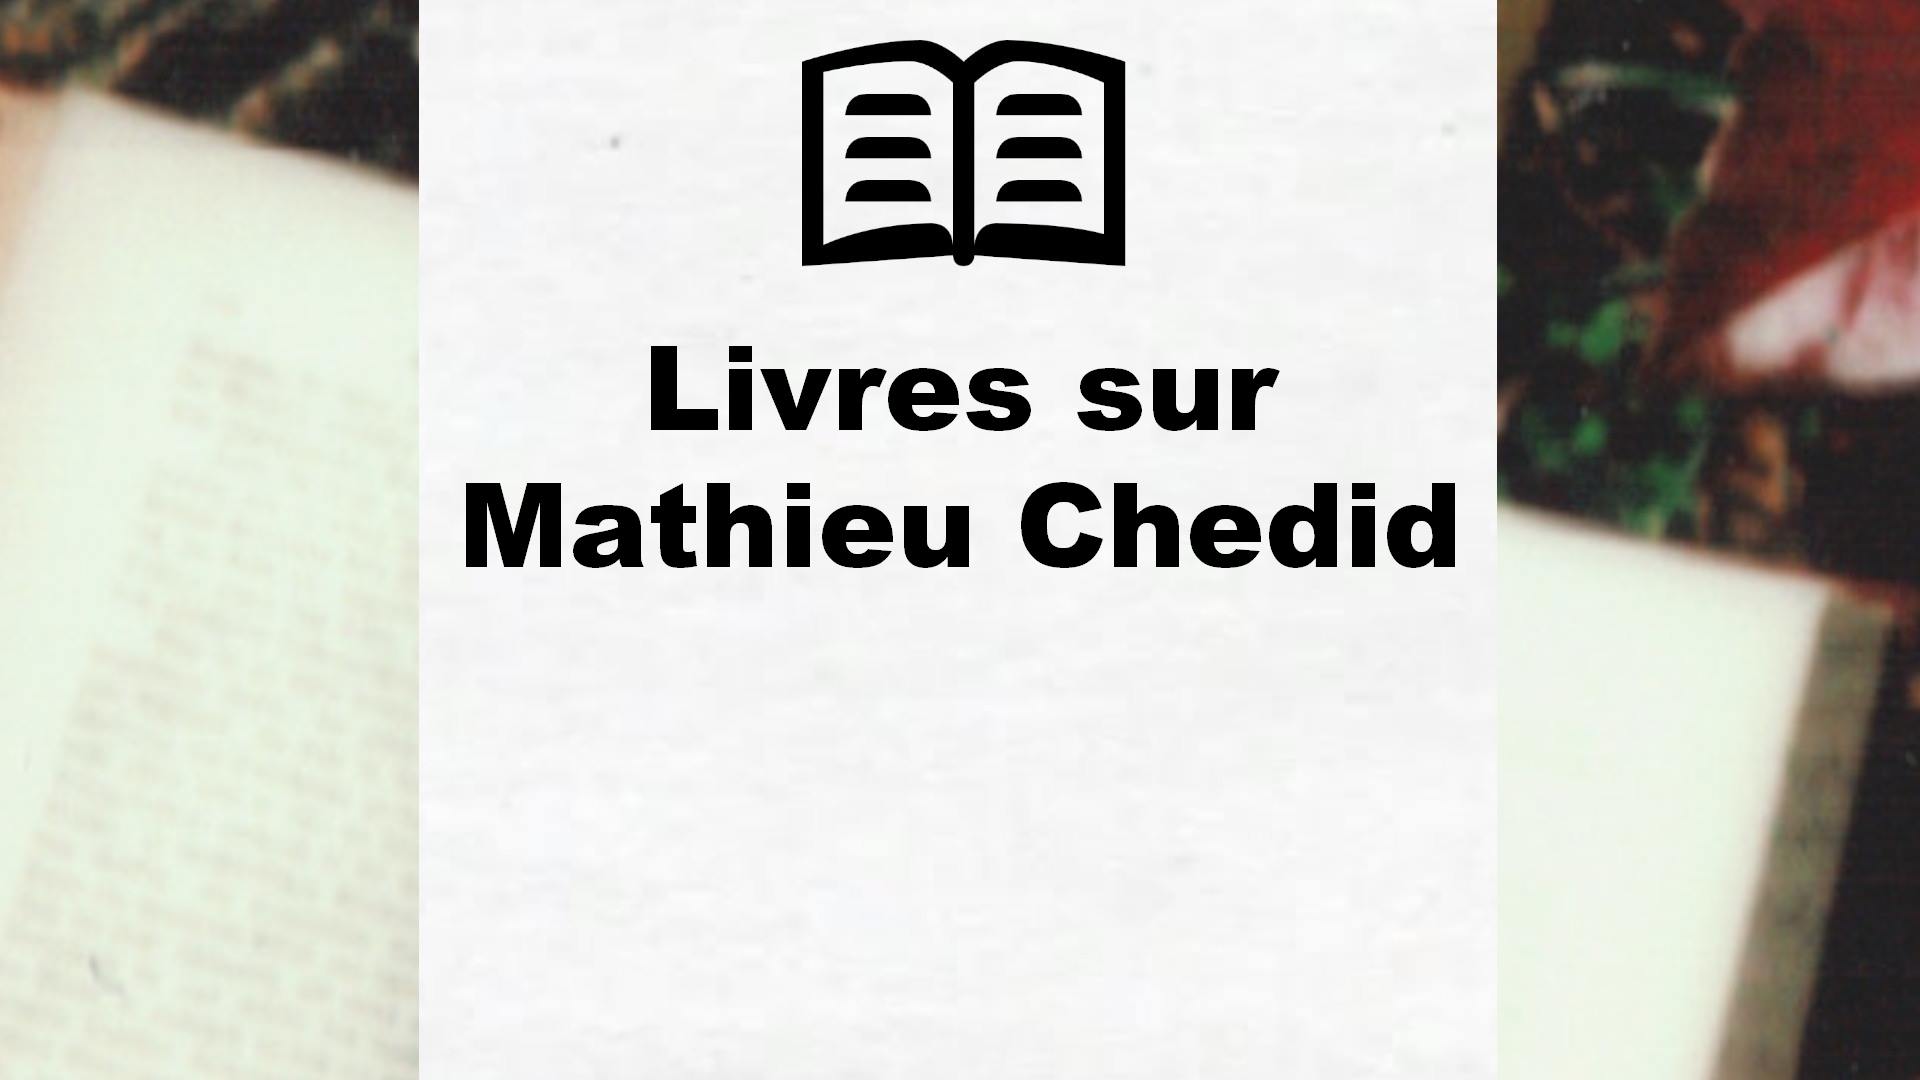 Livres sur Mathieu Chedid